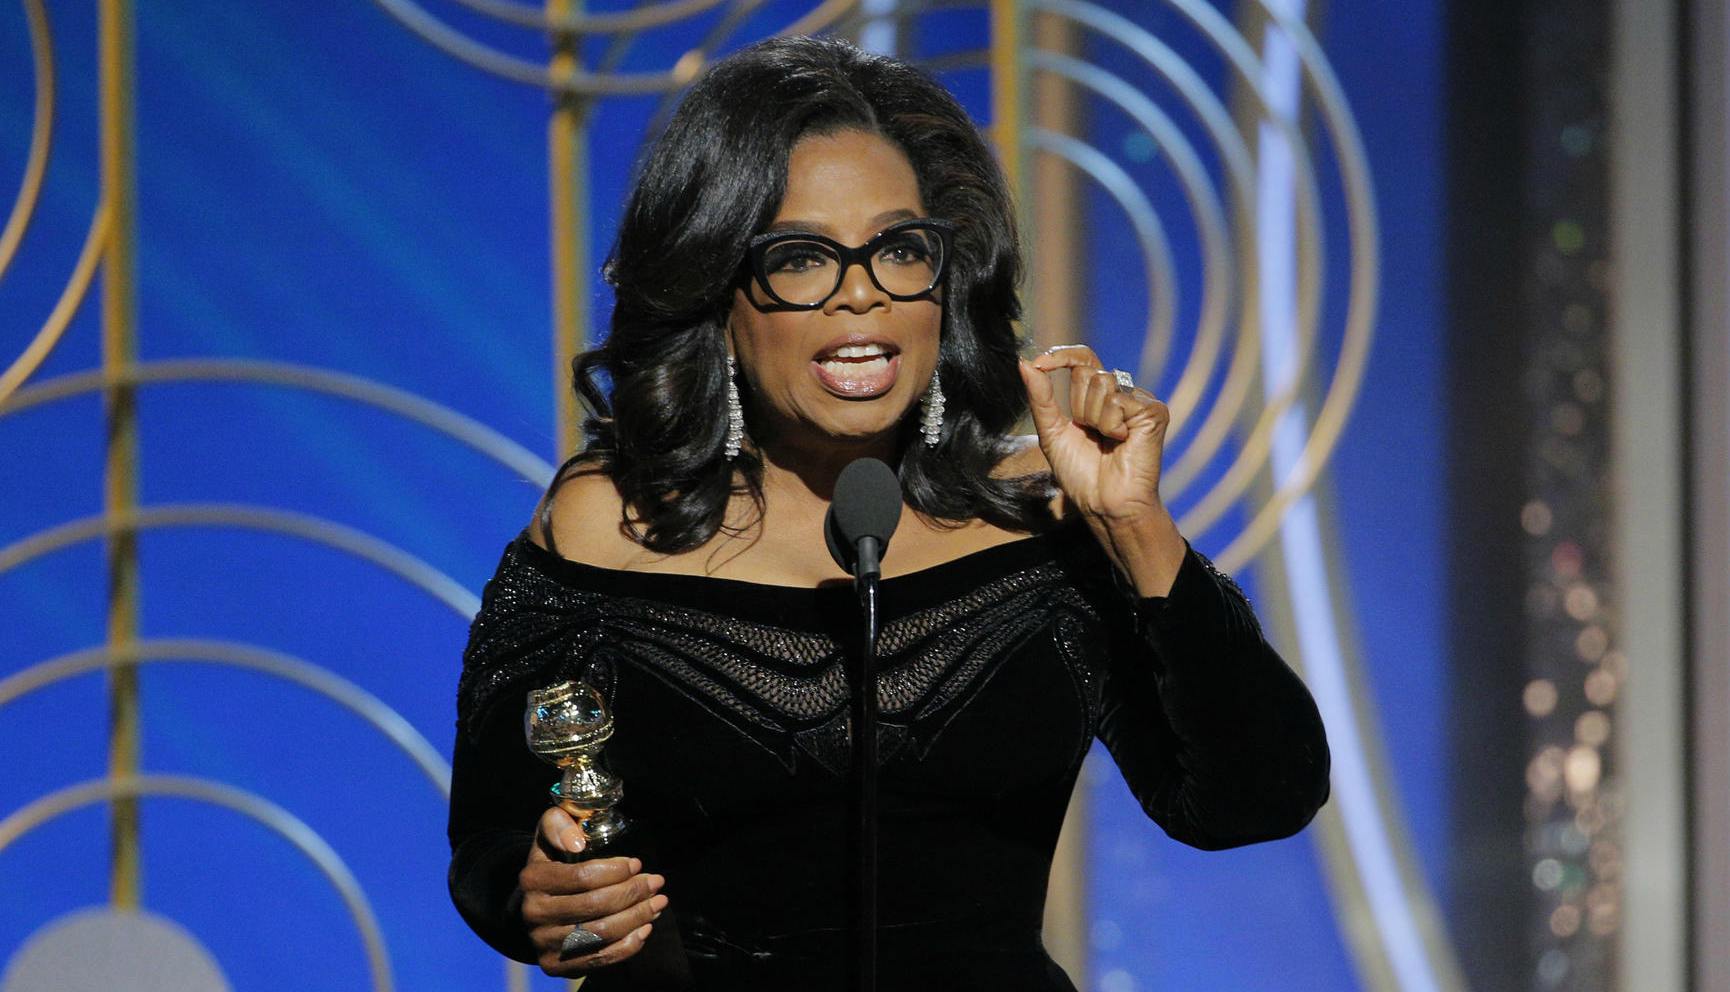 Uno de los momentos más emotivos y sinceros de la noche estuvo a cargo de Oprah Winfrey por su discurso tras recibir el Premio Cecile B. DeMille,